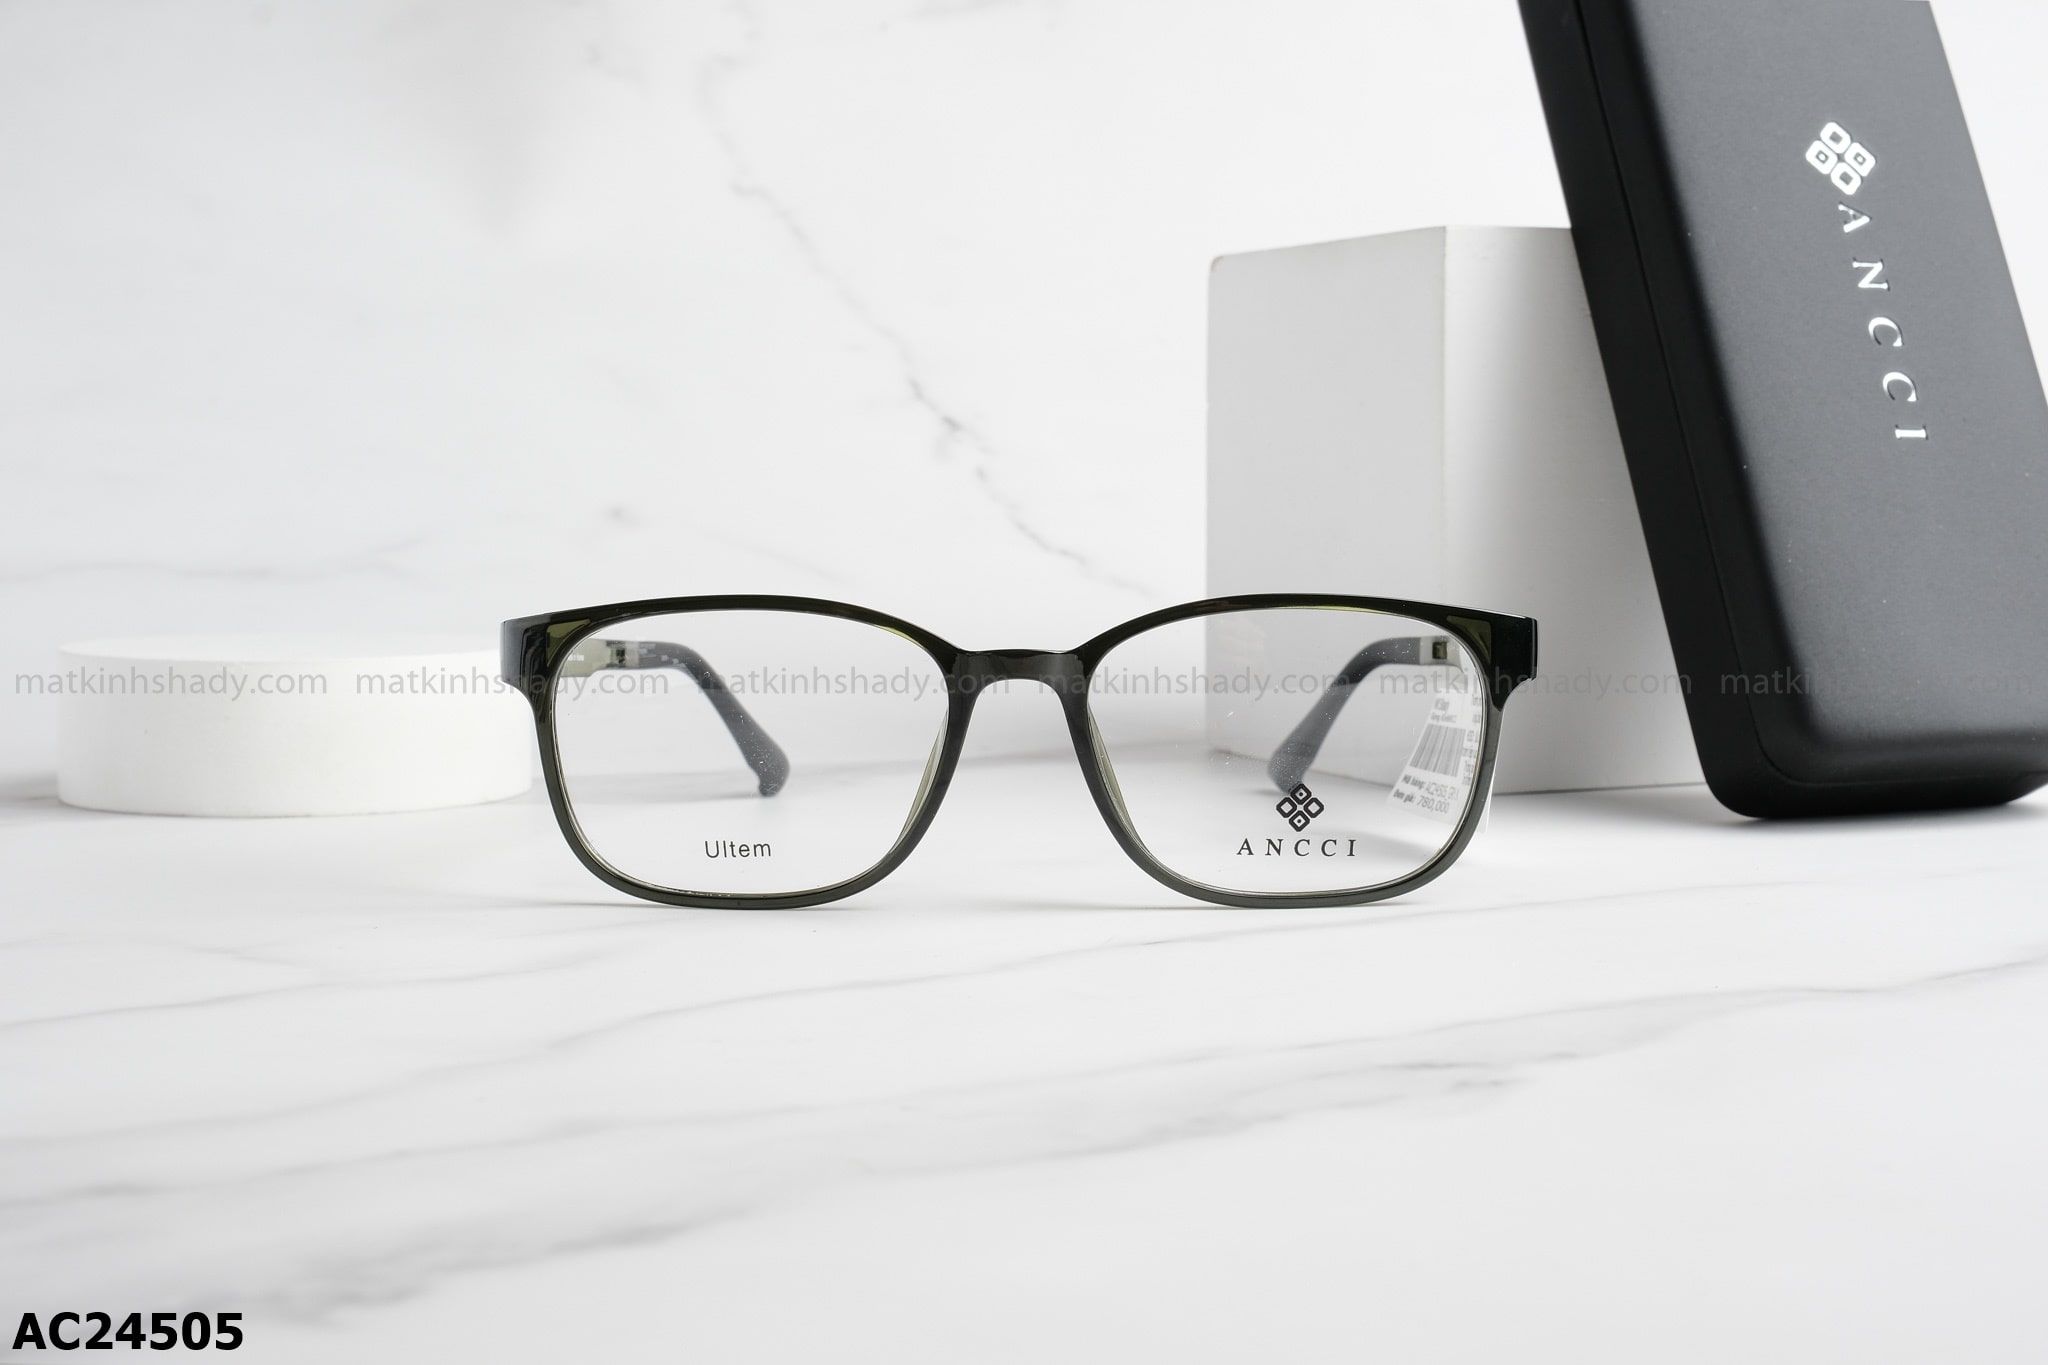  ANCCI Eyewear - Glasses - AC24505 